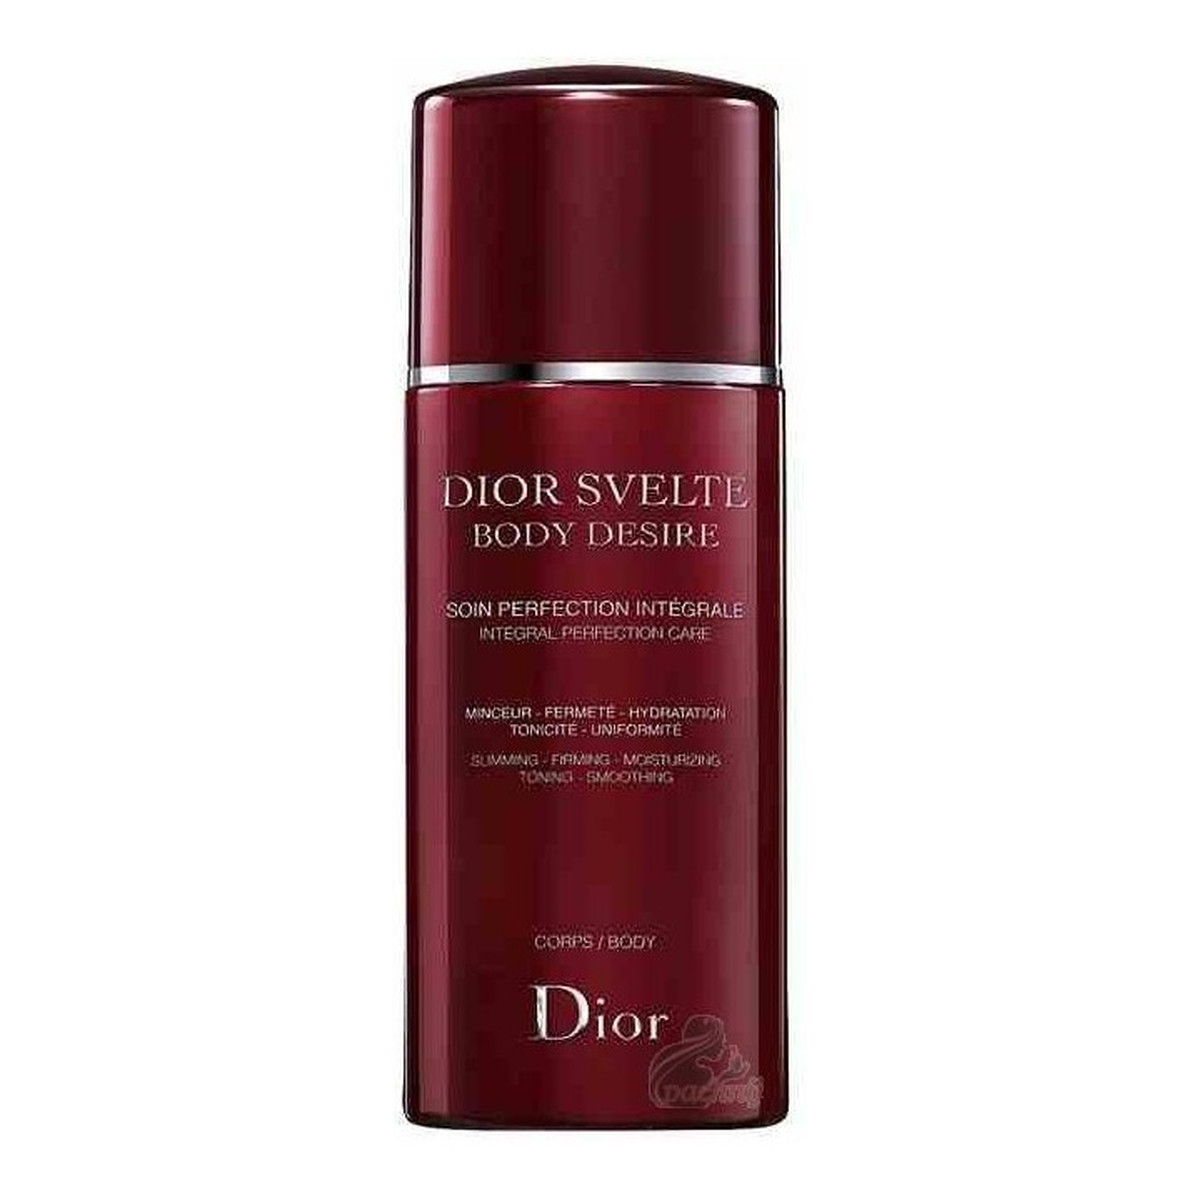 Dior Svelte Body Desire Integral Perfection Care Preparat wyszczuplający do ciała 200ml